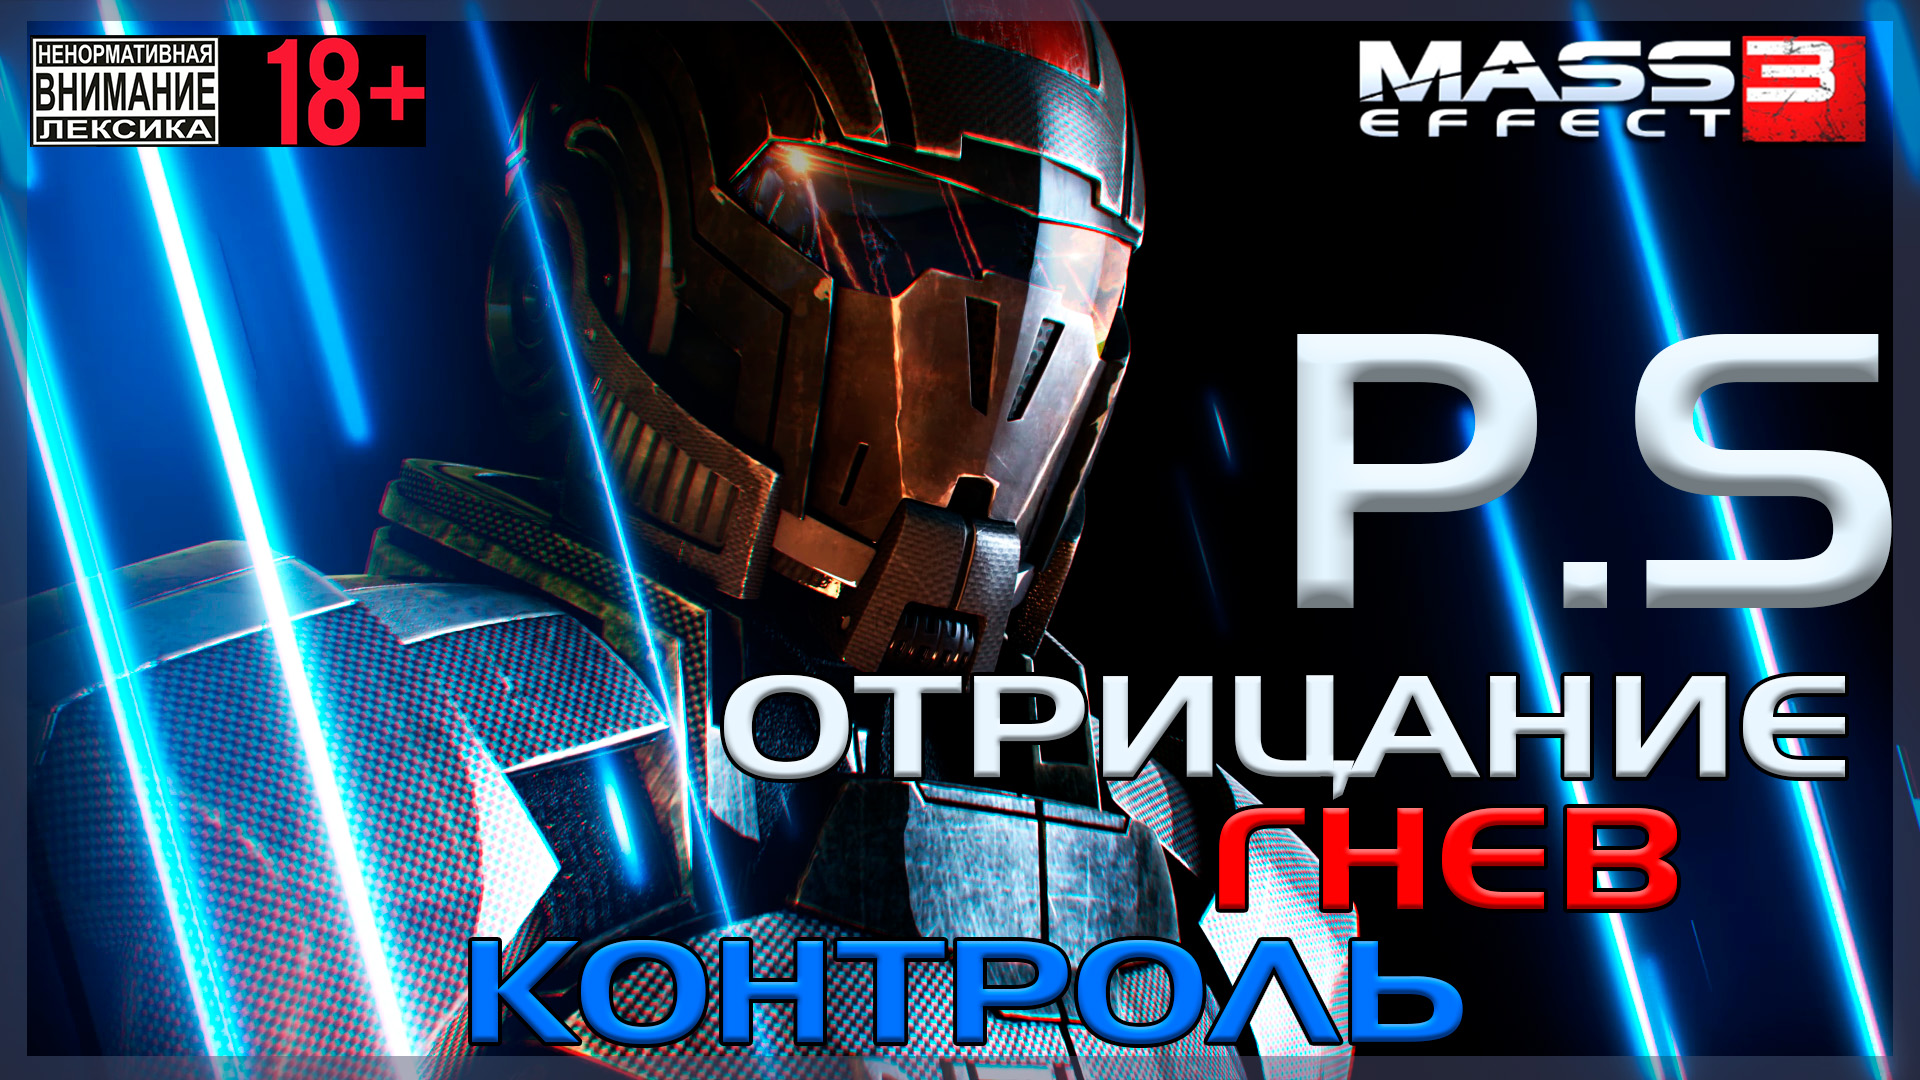 Mass Effect 3 / Original - P.S. Три концовки - Отрицание, Гнев и Контроль